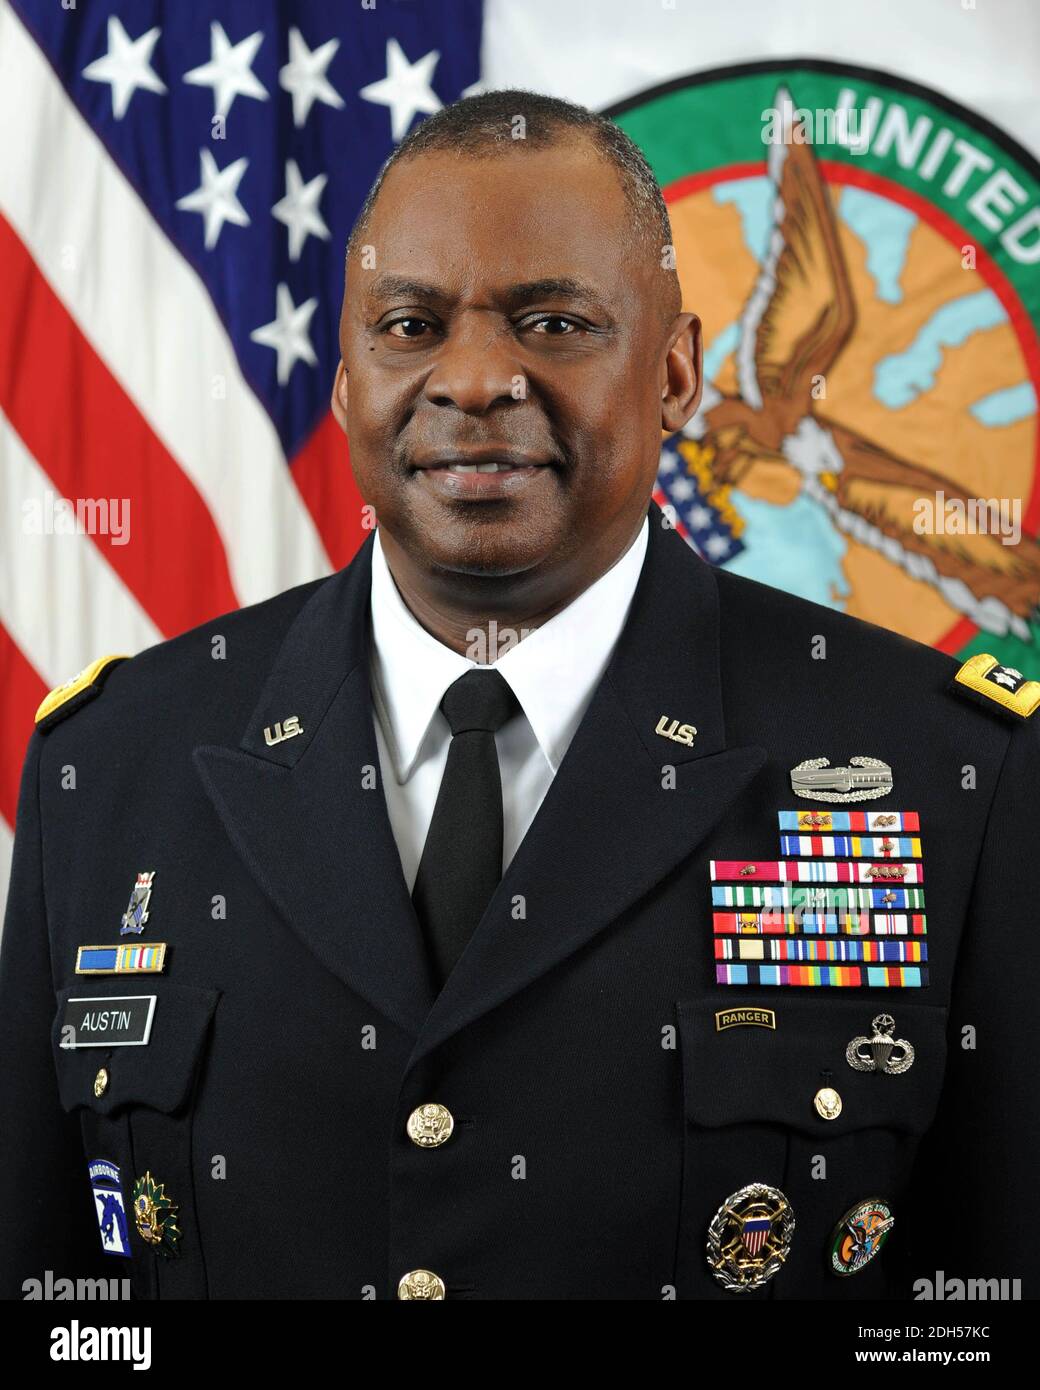 Il generale dell'esercito degli Stati Uniti Lloyd J. Austin III, Comandante, comando centrale degli Stati Uniti, assunse il suo posto il 22 marzo 2013. Credito obbligatorio: Monica A. King/DoD via CNP /MediaPunch Foto Stock